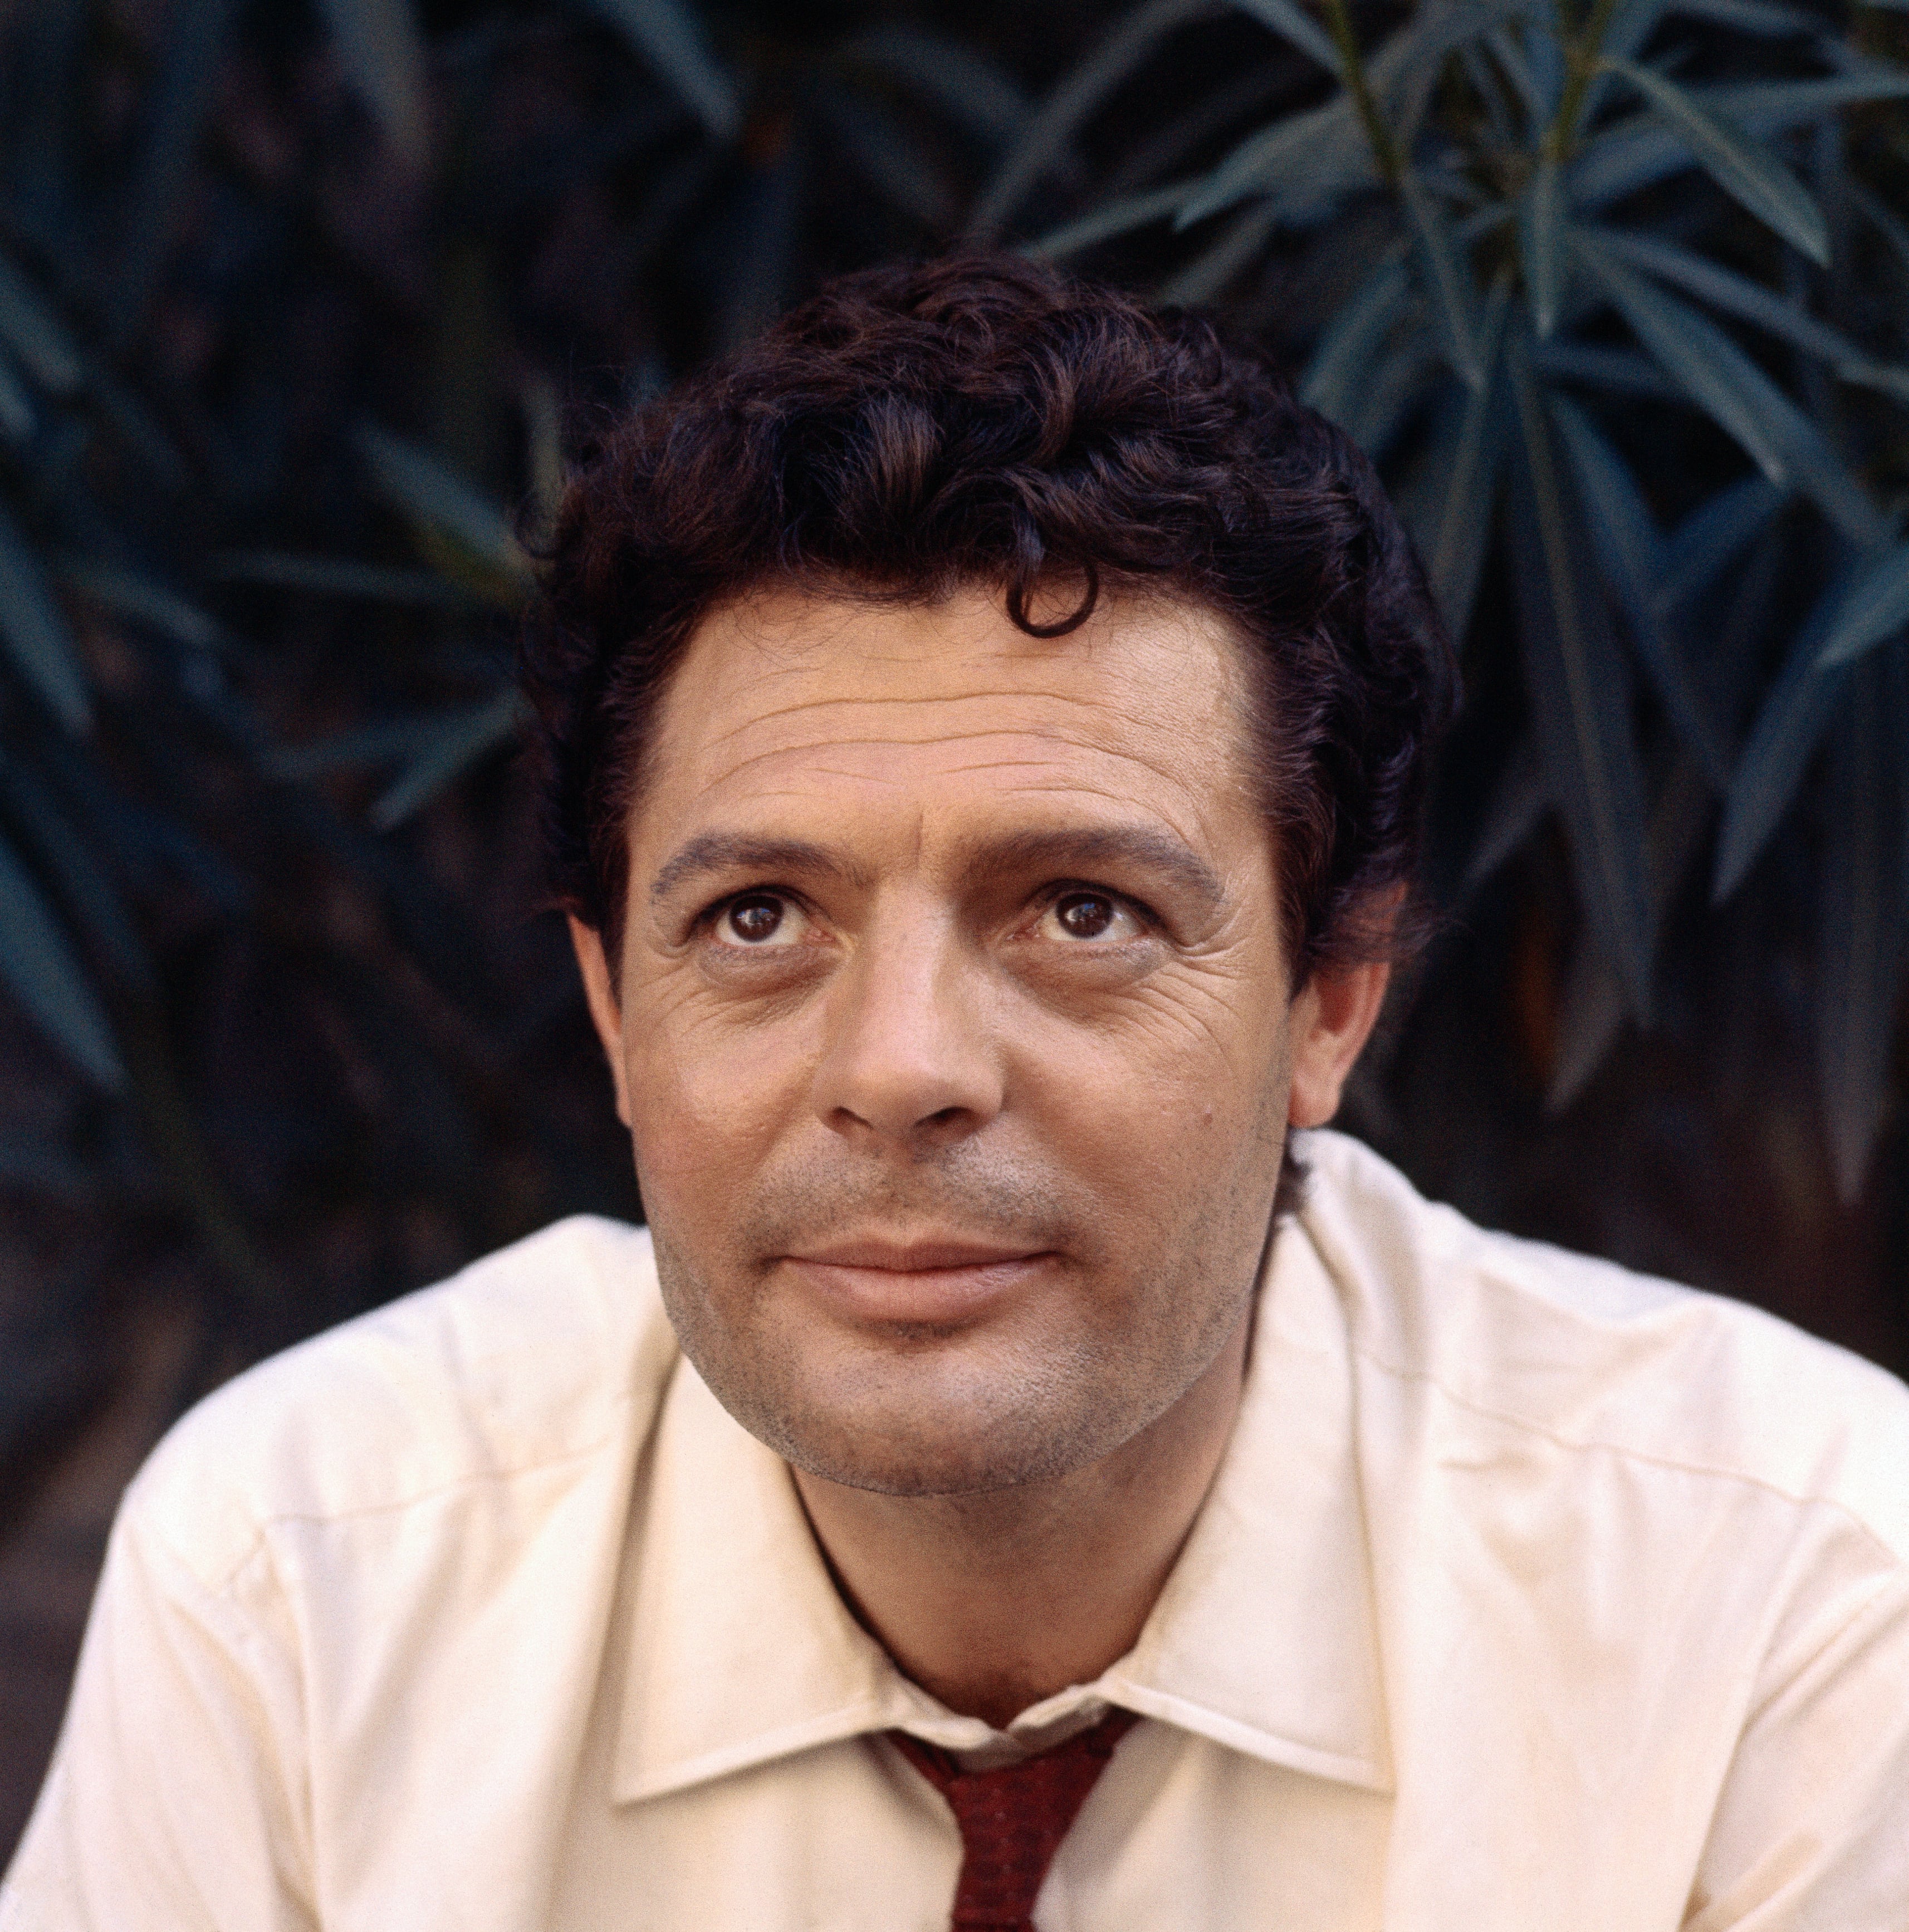 A portrait shot of Marcello Mastrioianni.